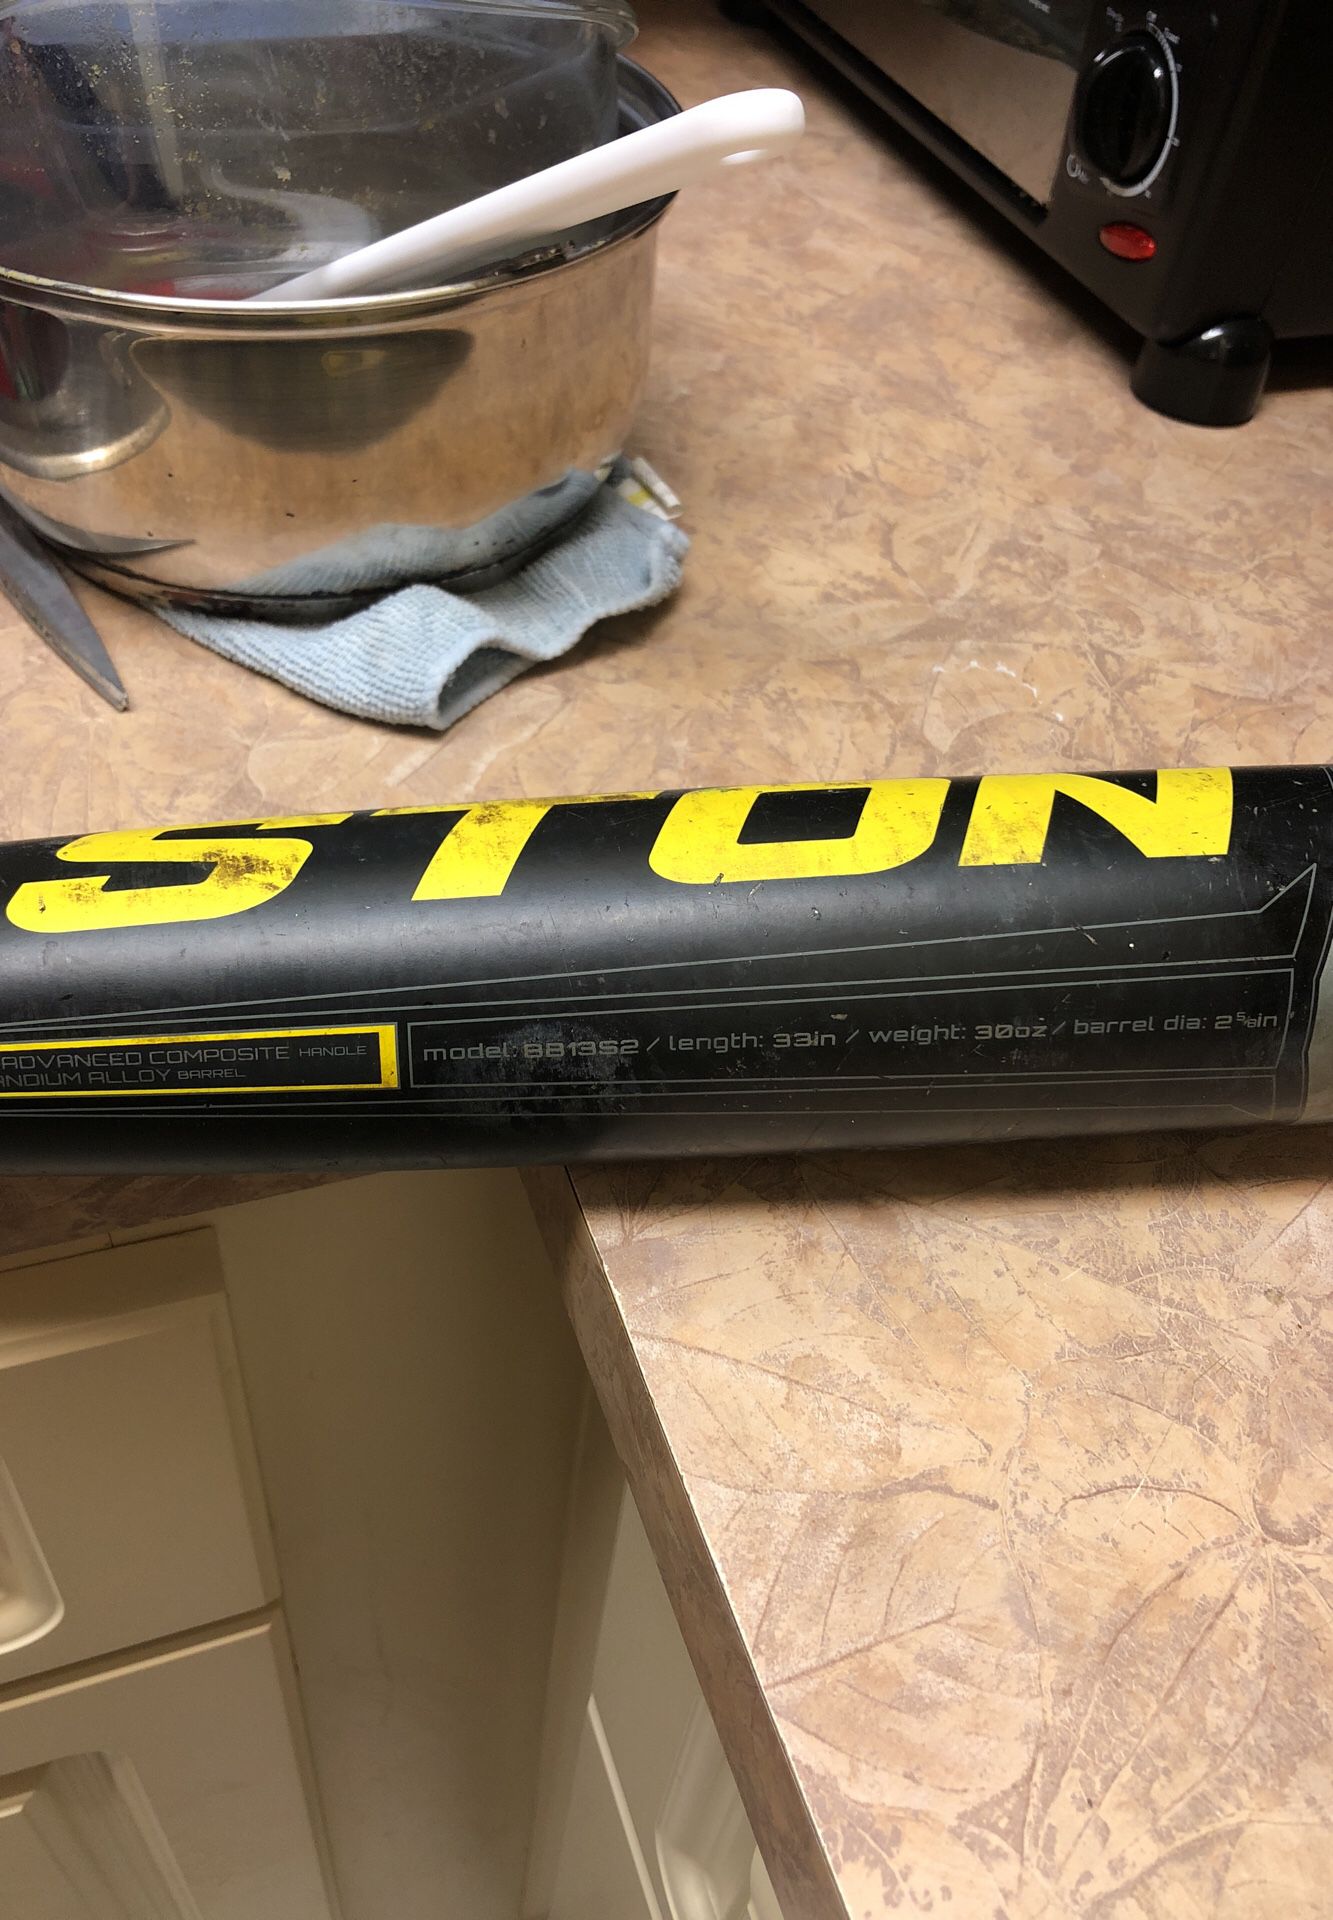 Easton s2 hybrid baseball bat